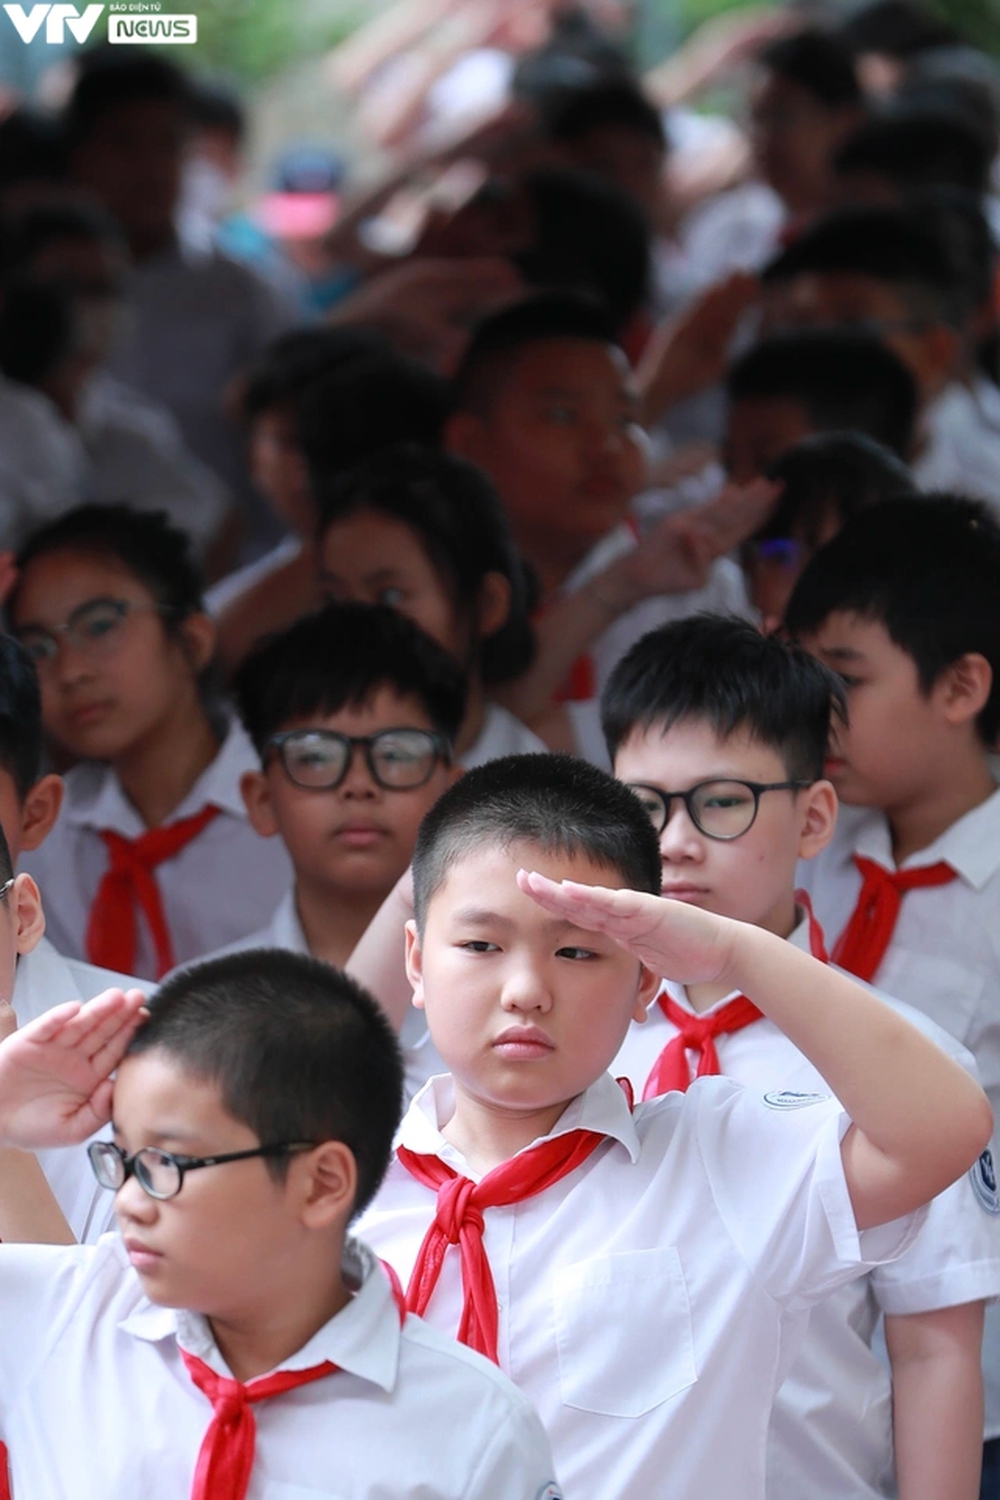 Hà Nội: Lễ khai giảng giản dị, trang nghiêm tại một trường tiểu học - Ảnh 10.